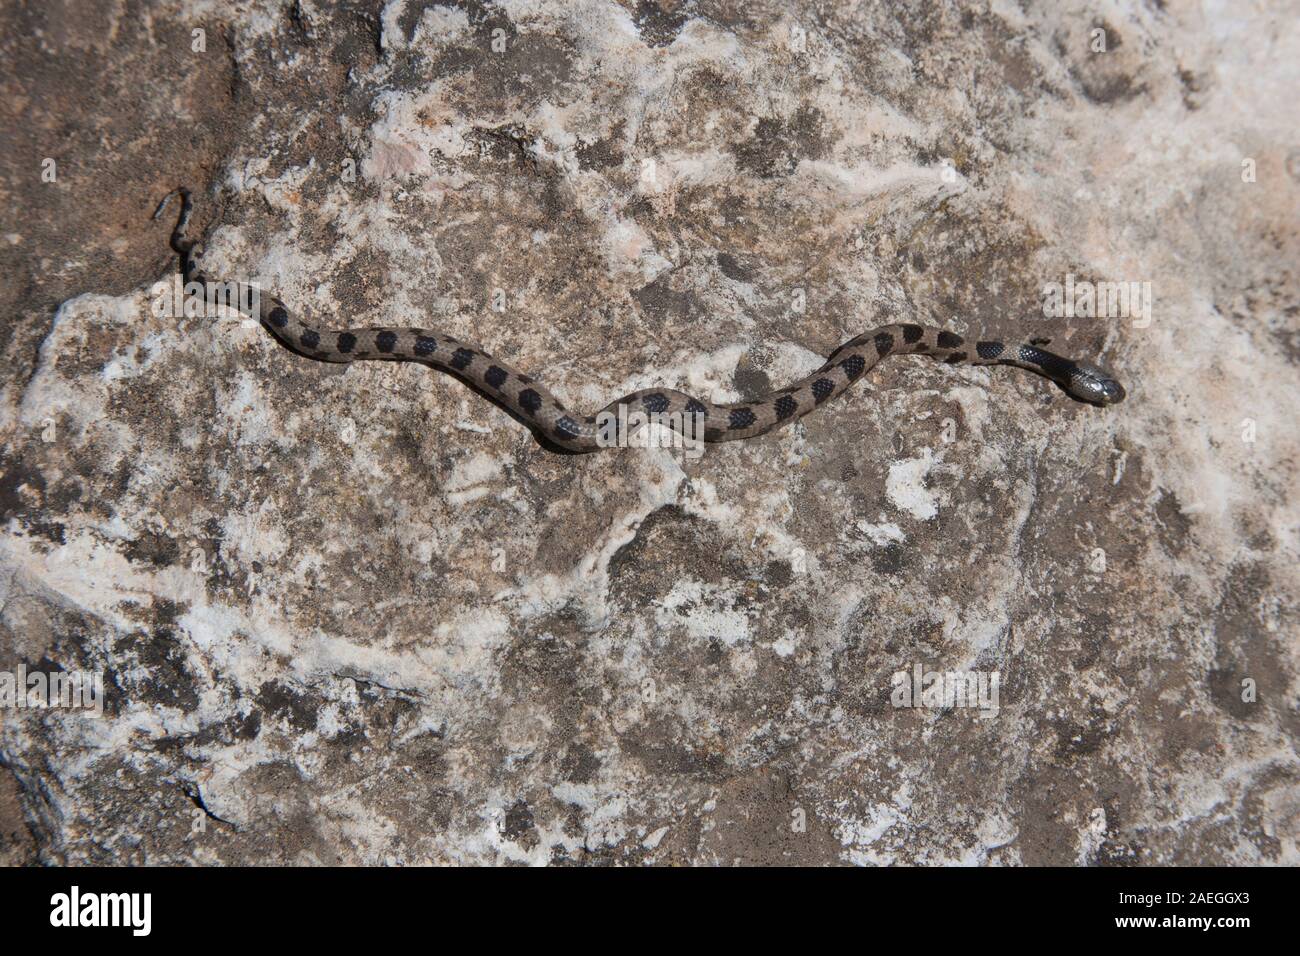 La Unión cat snake (Telescopus fallax), (subespecie syriacus Telescopus fallax) también conocida como la serpiente Soosan, es un veneno de serpientes colubrid endem Foto de stock